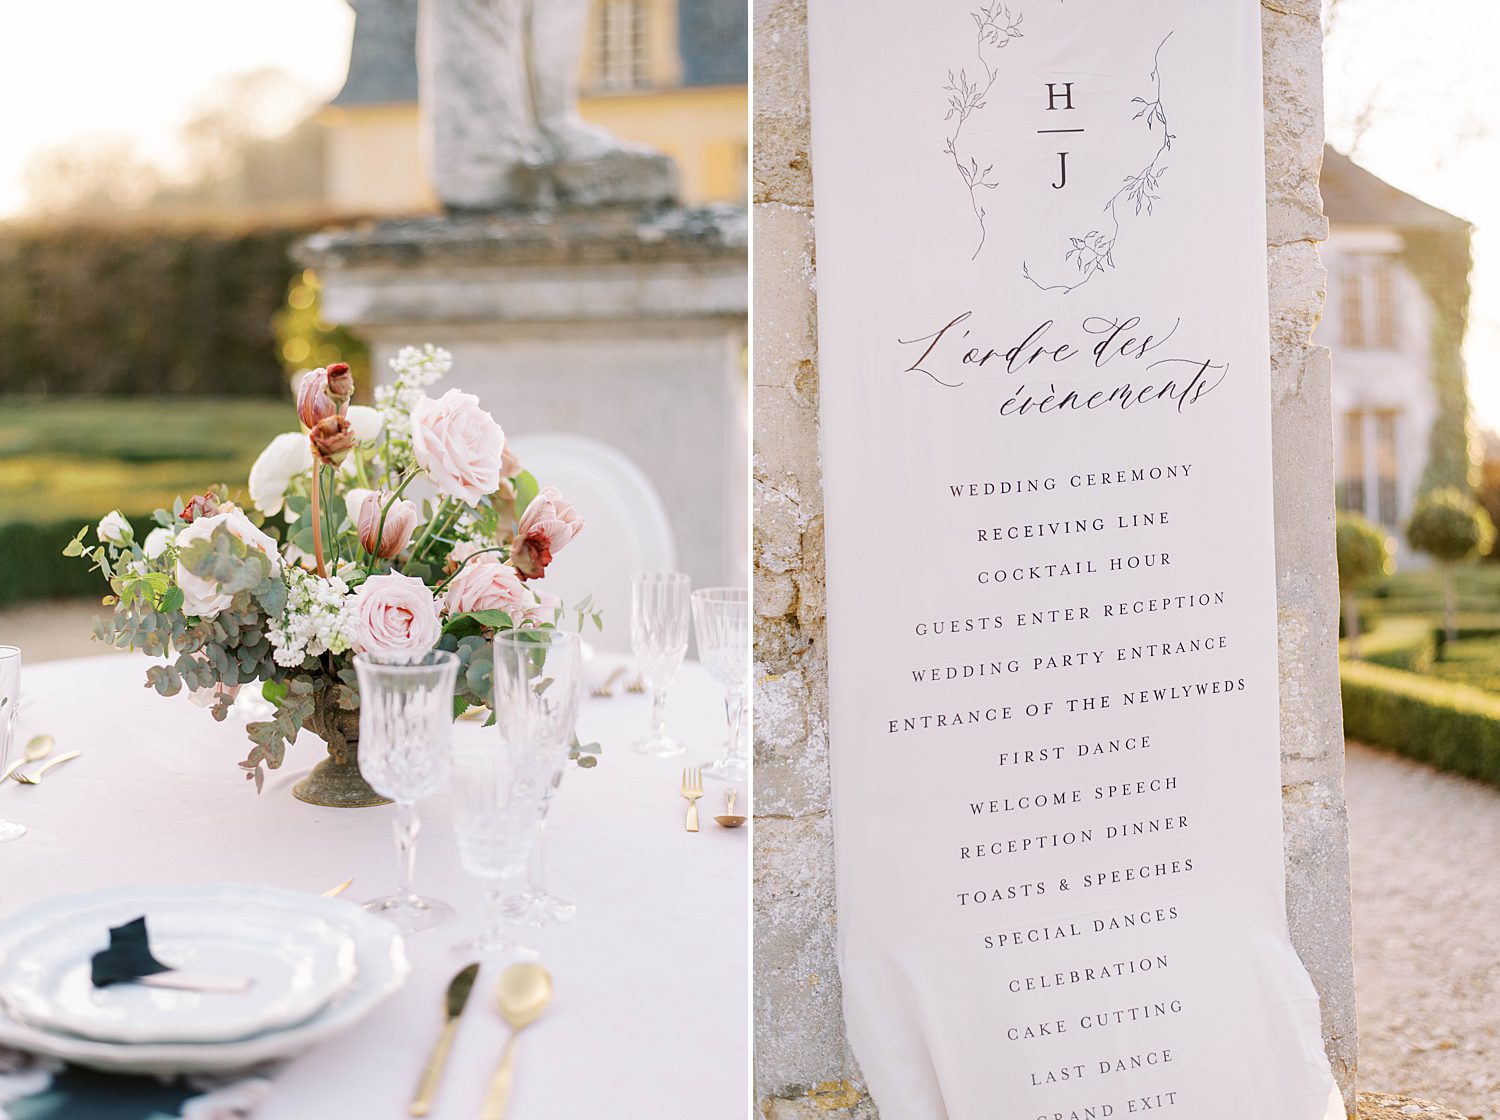 menu and centerpieces for garden wedding reception at Chateau de Villette